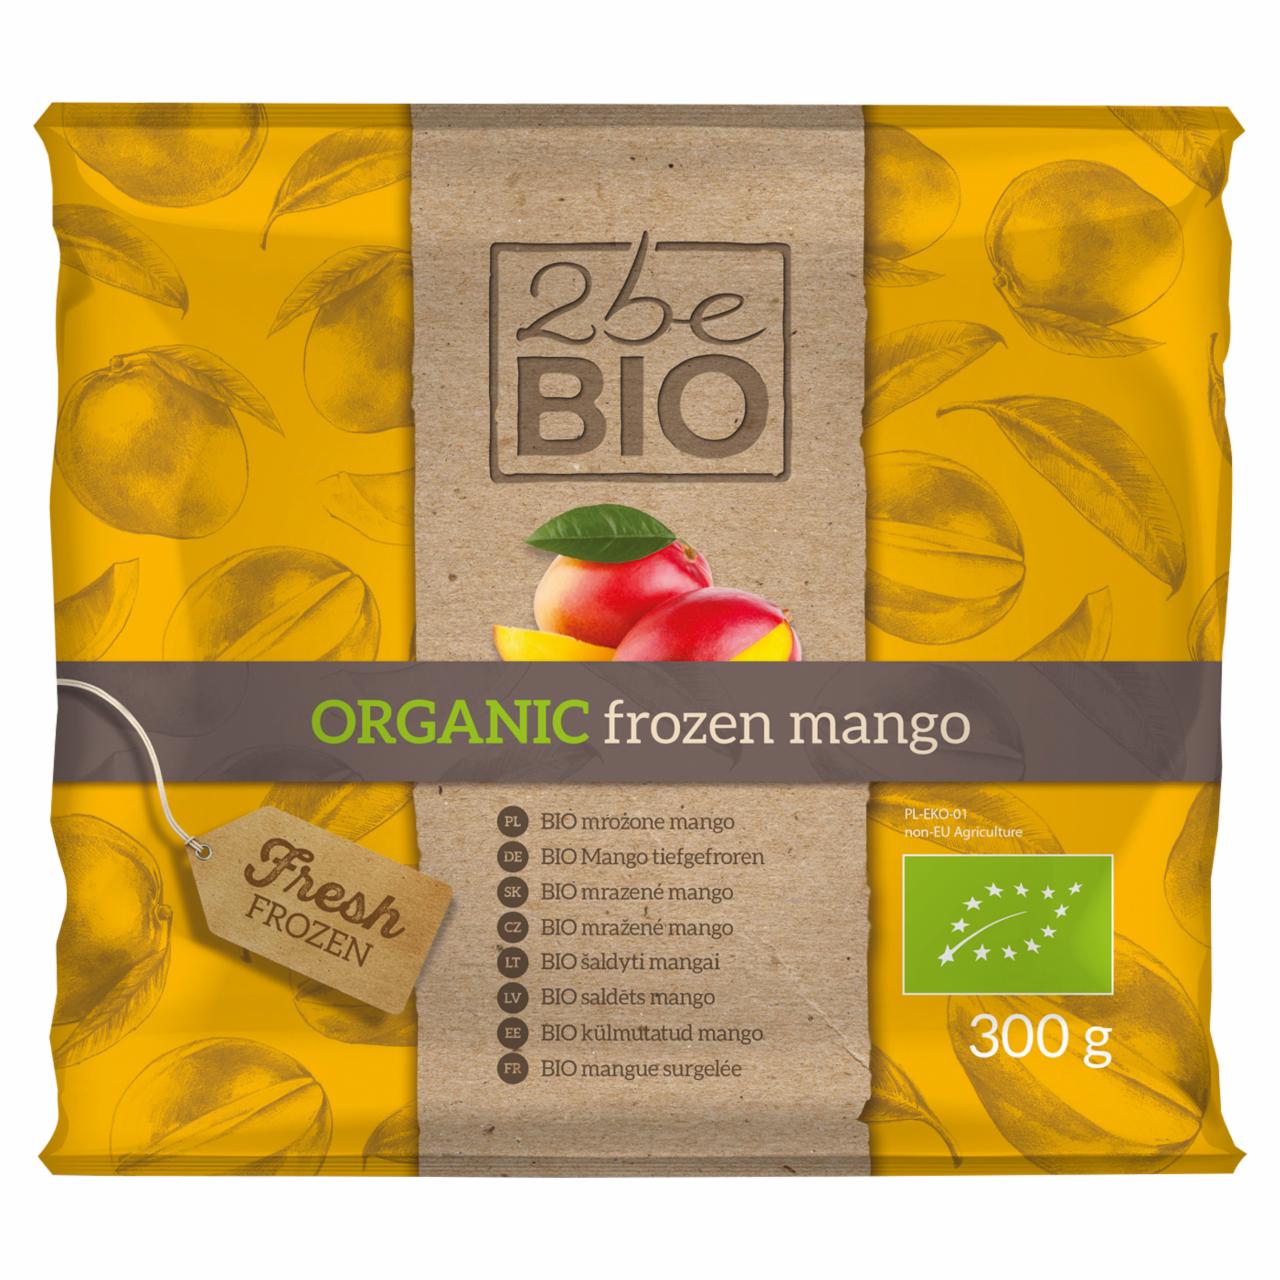 Zdjęcia - 2beBio Bio mrożone mango 300 g